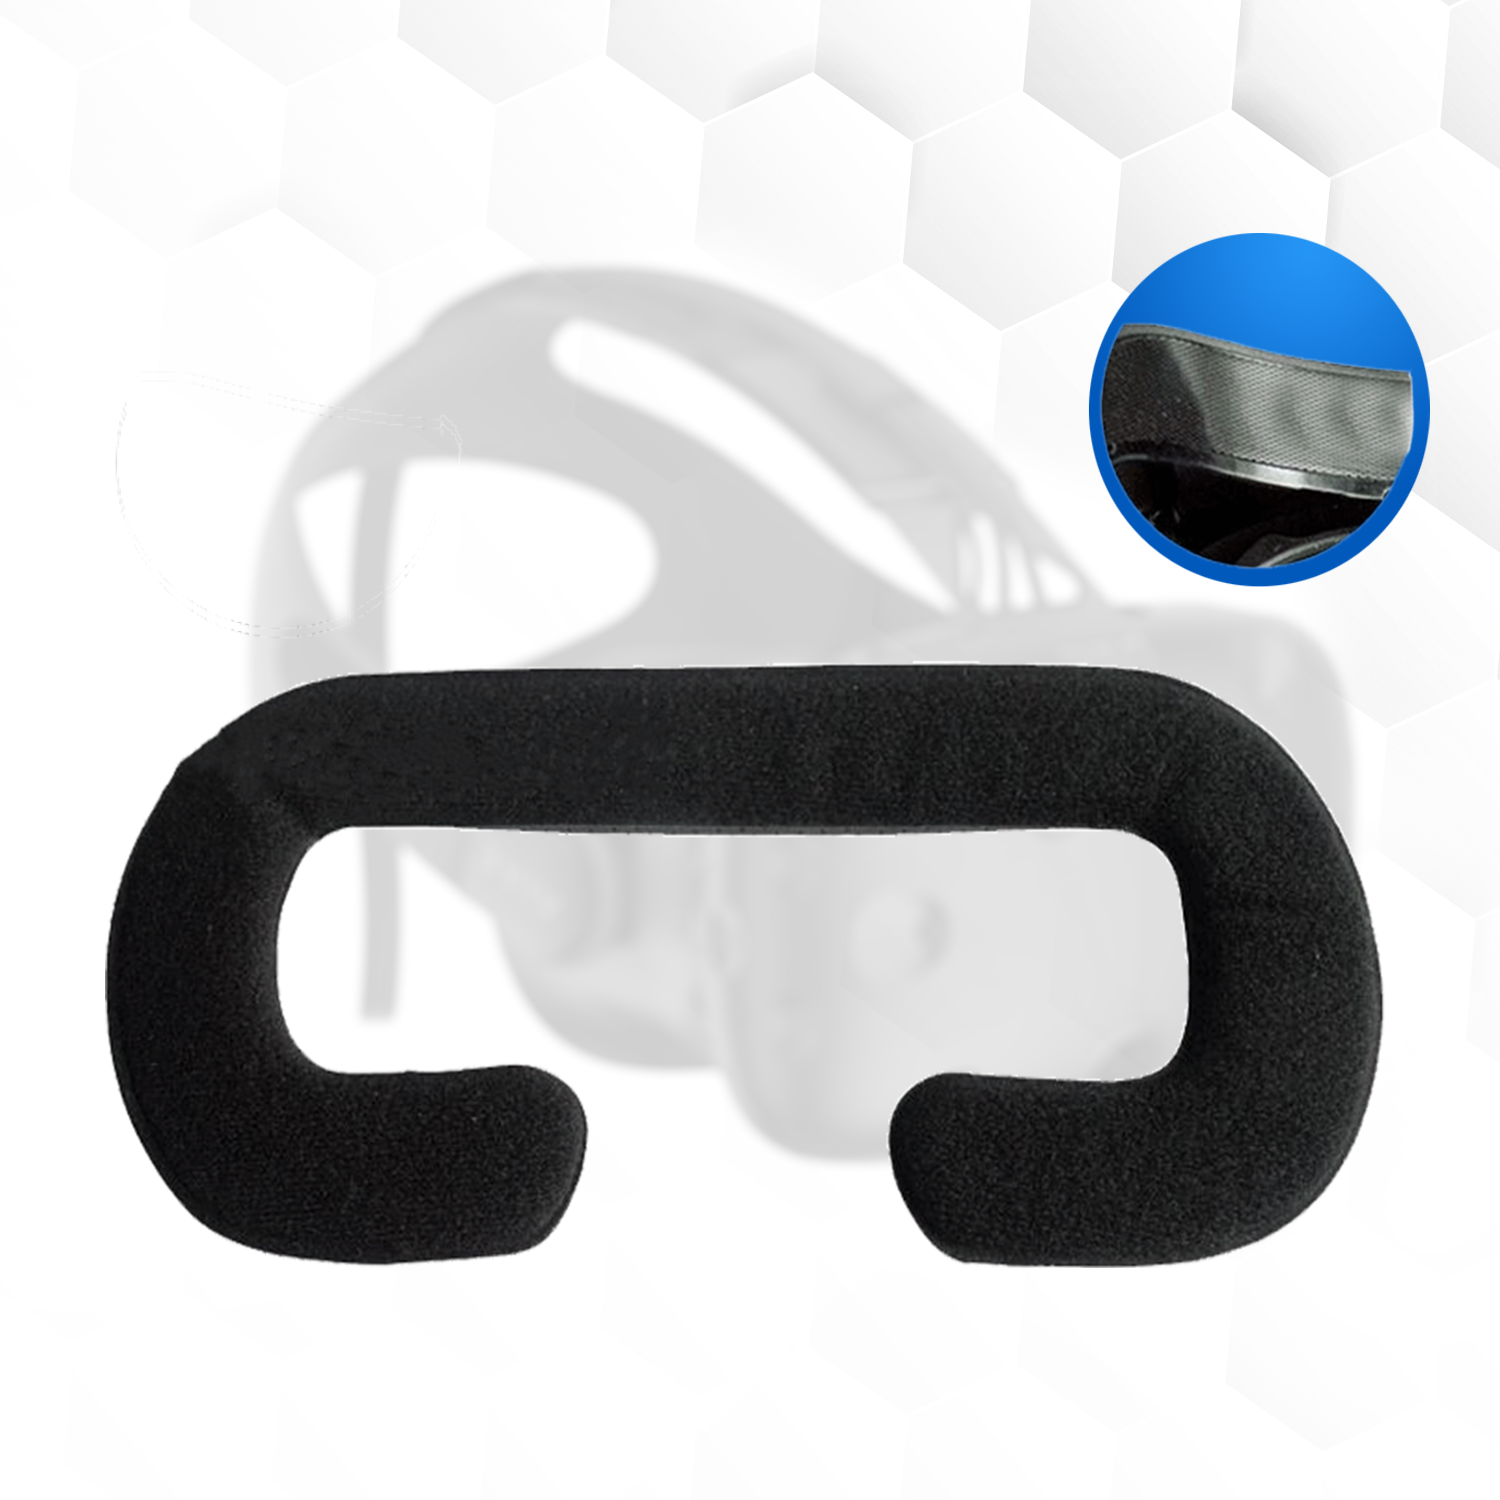 Beskyttelsesovertræk i læder til HTC Vive-briller